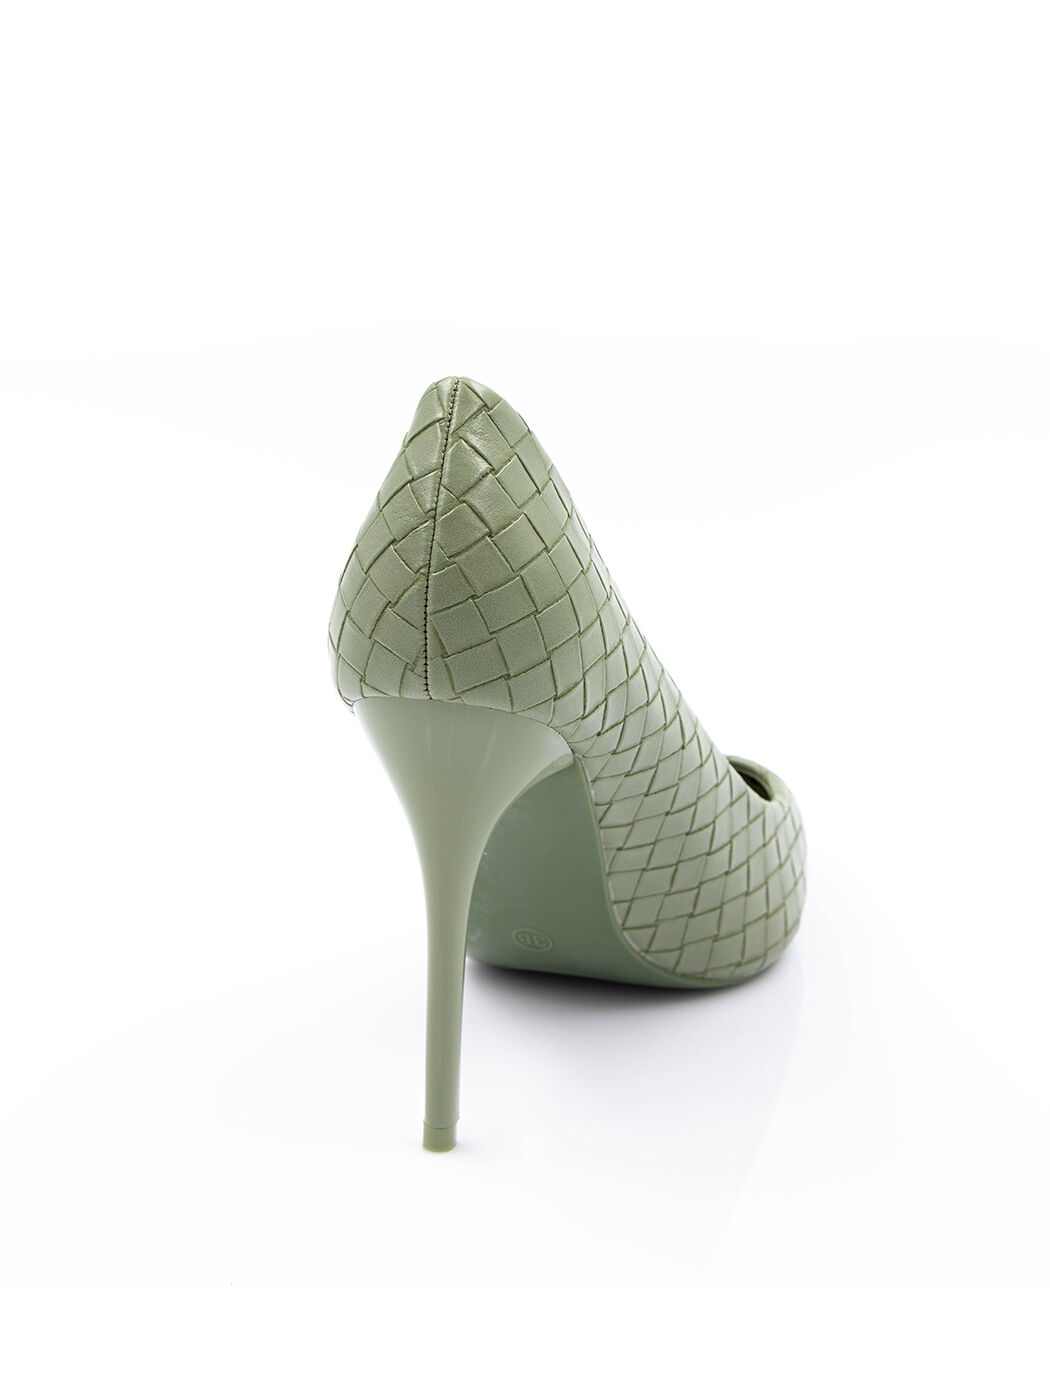 Туфли женские зеленые экокожа каблук шпилька демисезон от производителя FM вид 1